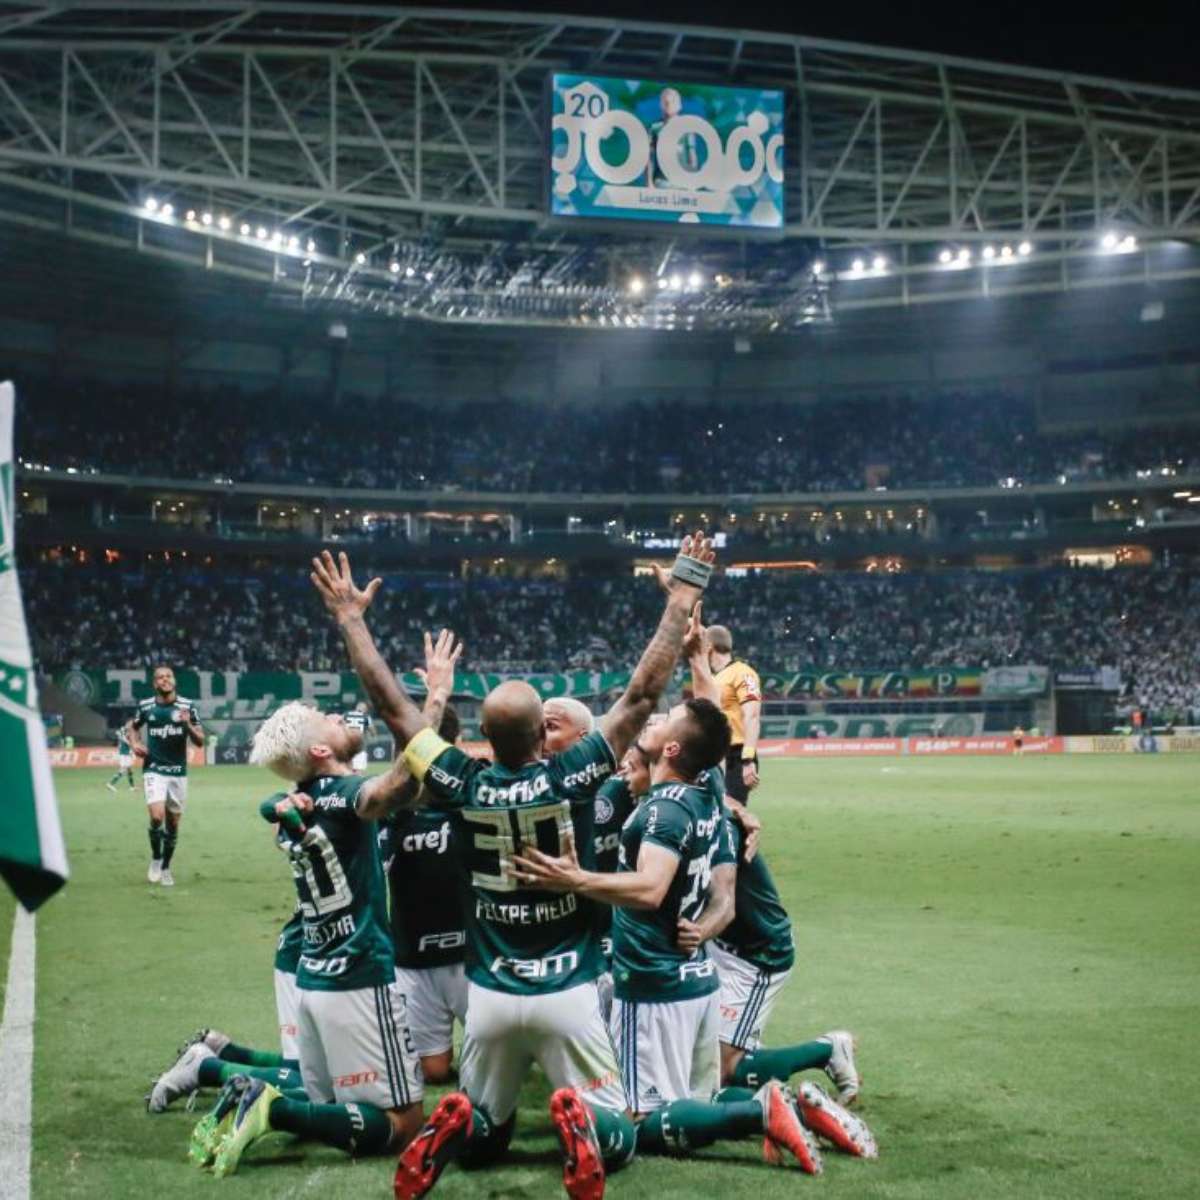 Decisões na Libertadores e Champions: como assistir os jogos desta quarta -  Placar - O futebol sem barreiras para você